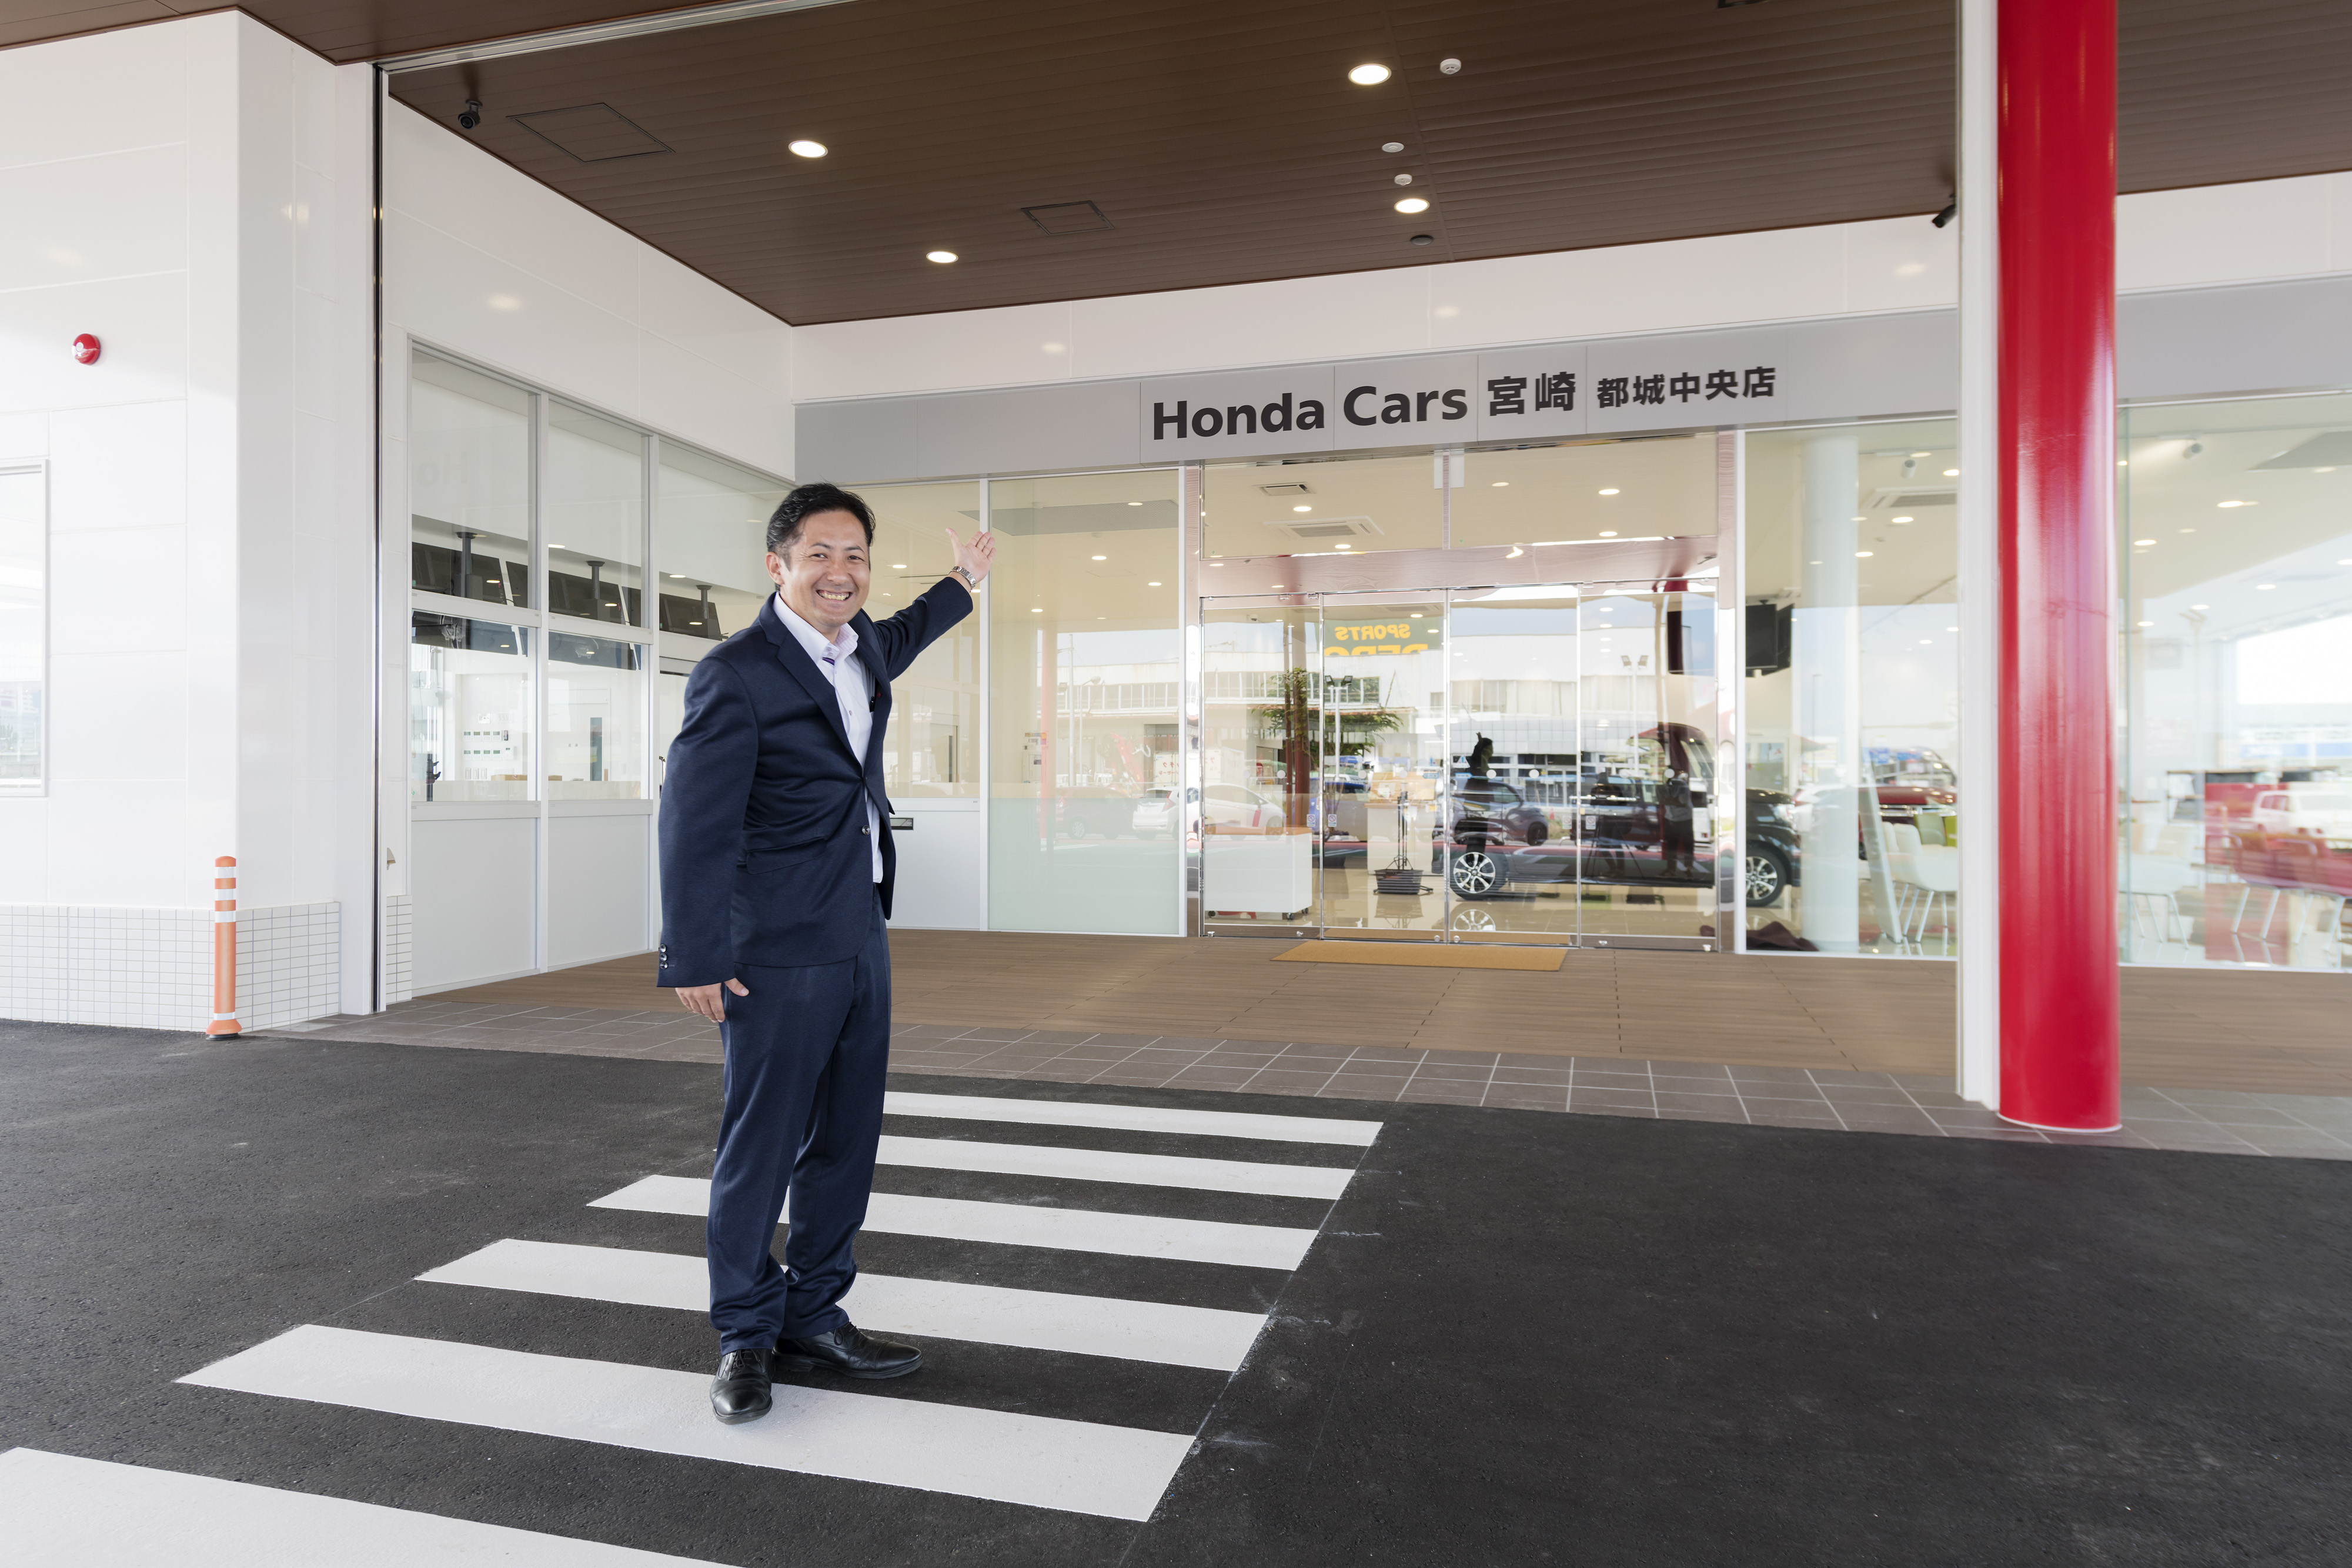 都城に新店舗 Honda Cars宮崎 都城中央店 10月6日オープン 楽しいイベントも Honda Local 宮崎県ホンダカーズブログ